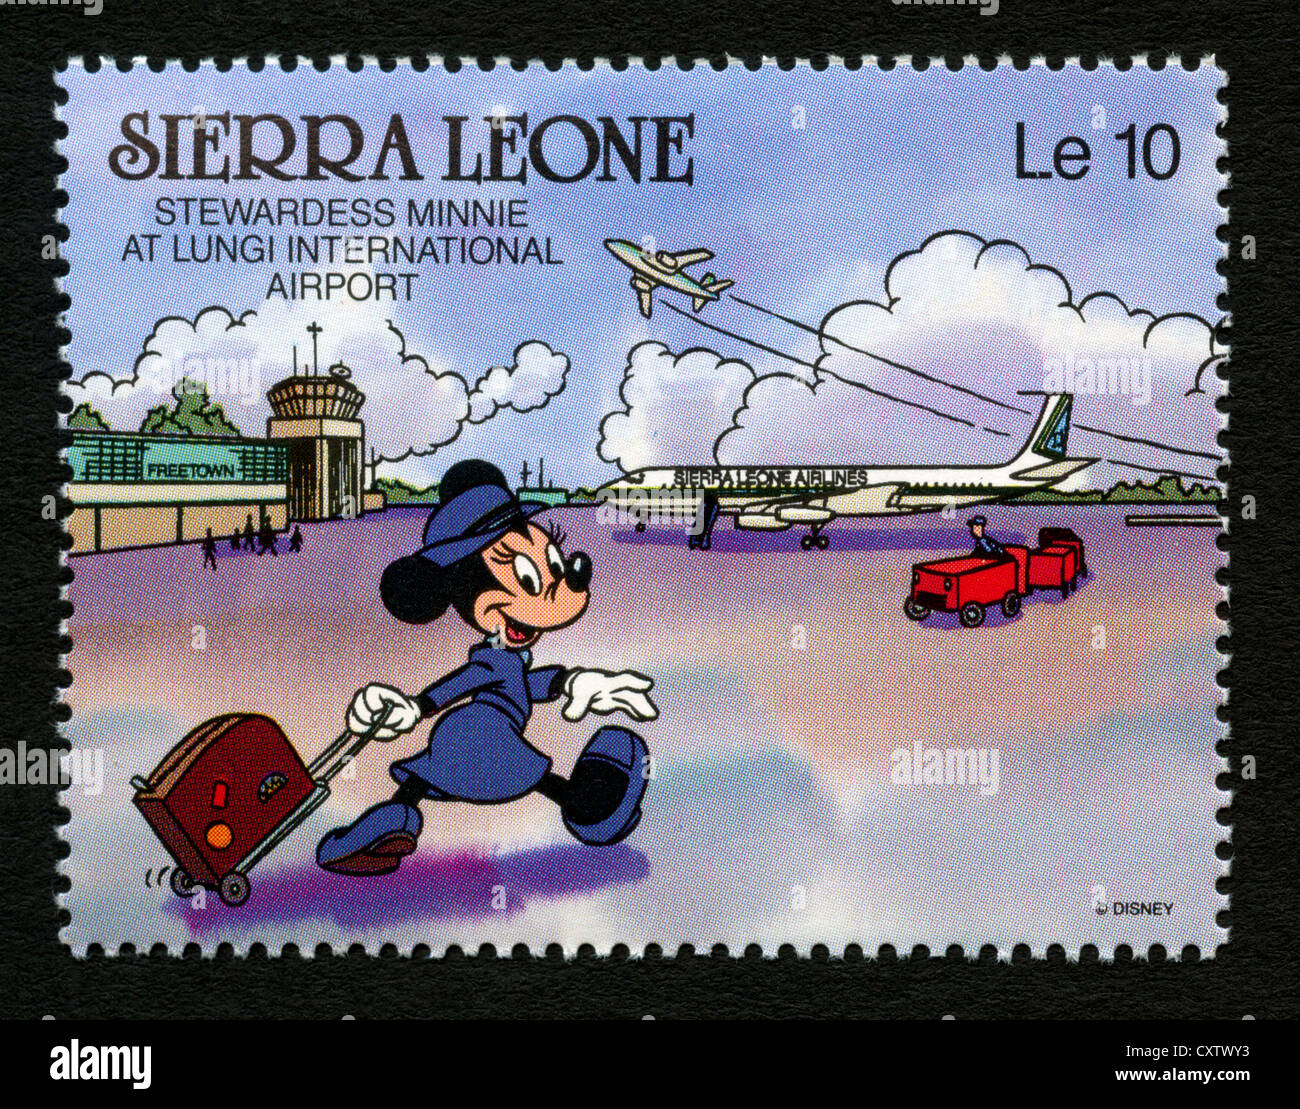 Sierra Leone francobollo - Cartoni animati Disney - Minnie Mouse, la  hostess a Lungi dall'Aeroporto Internazionale Foto stock - Alamy